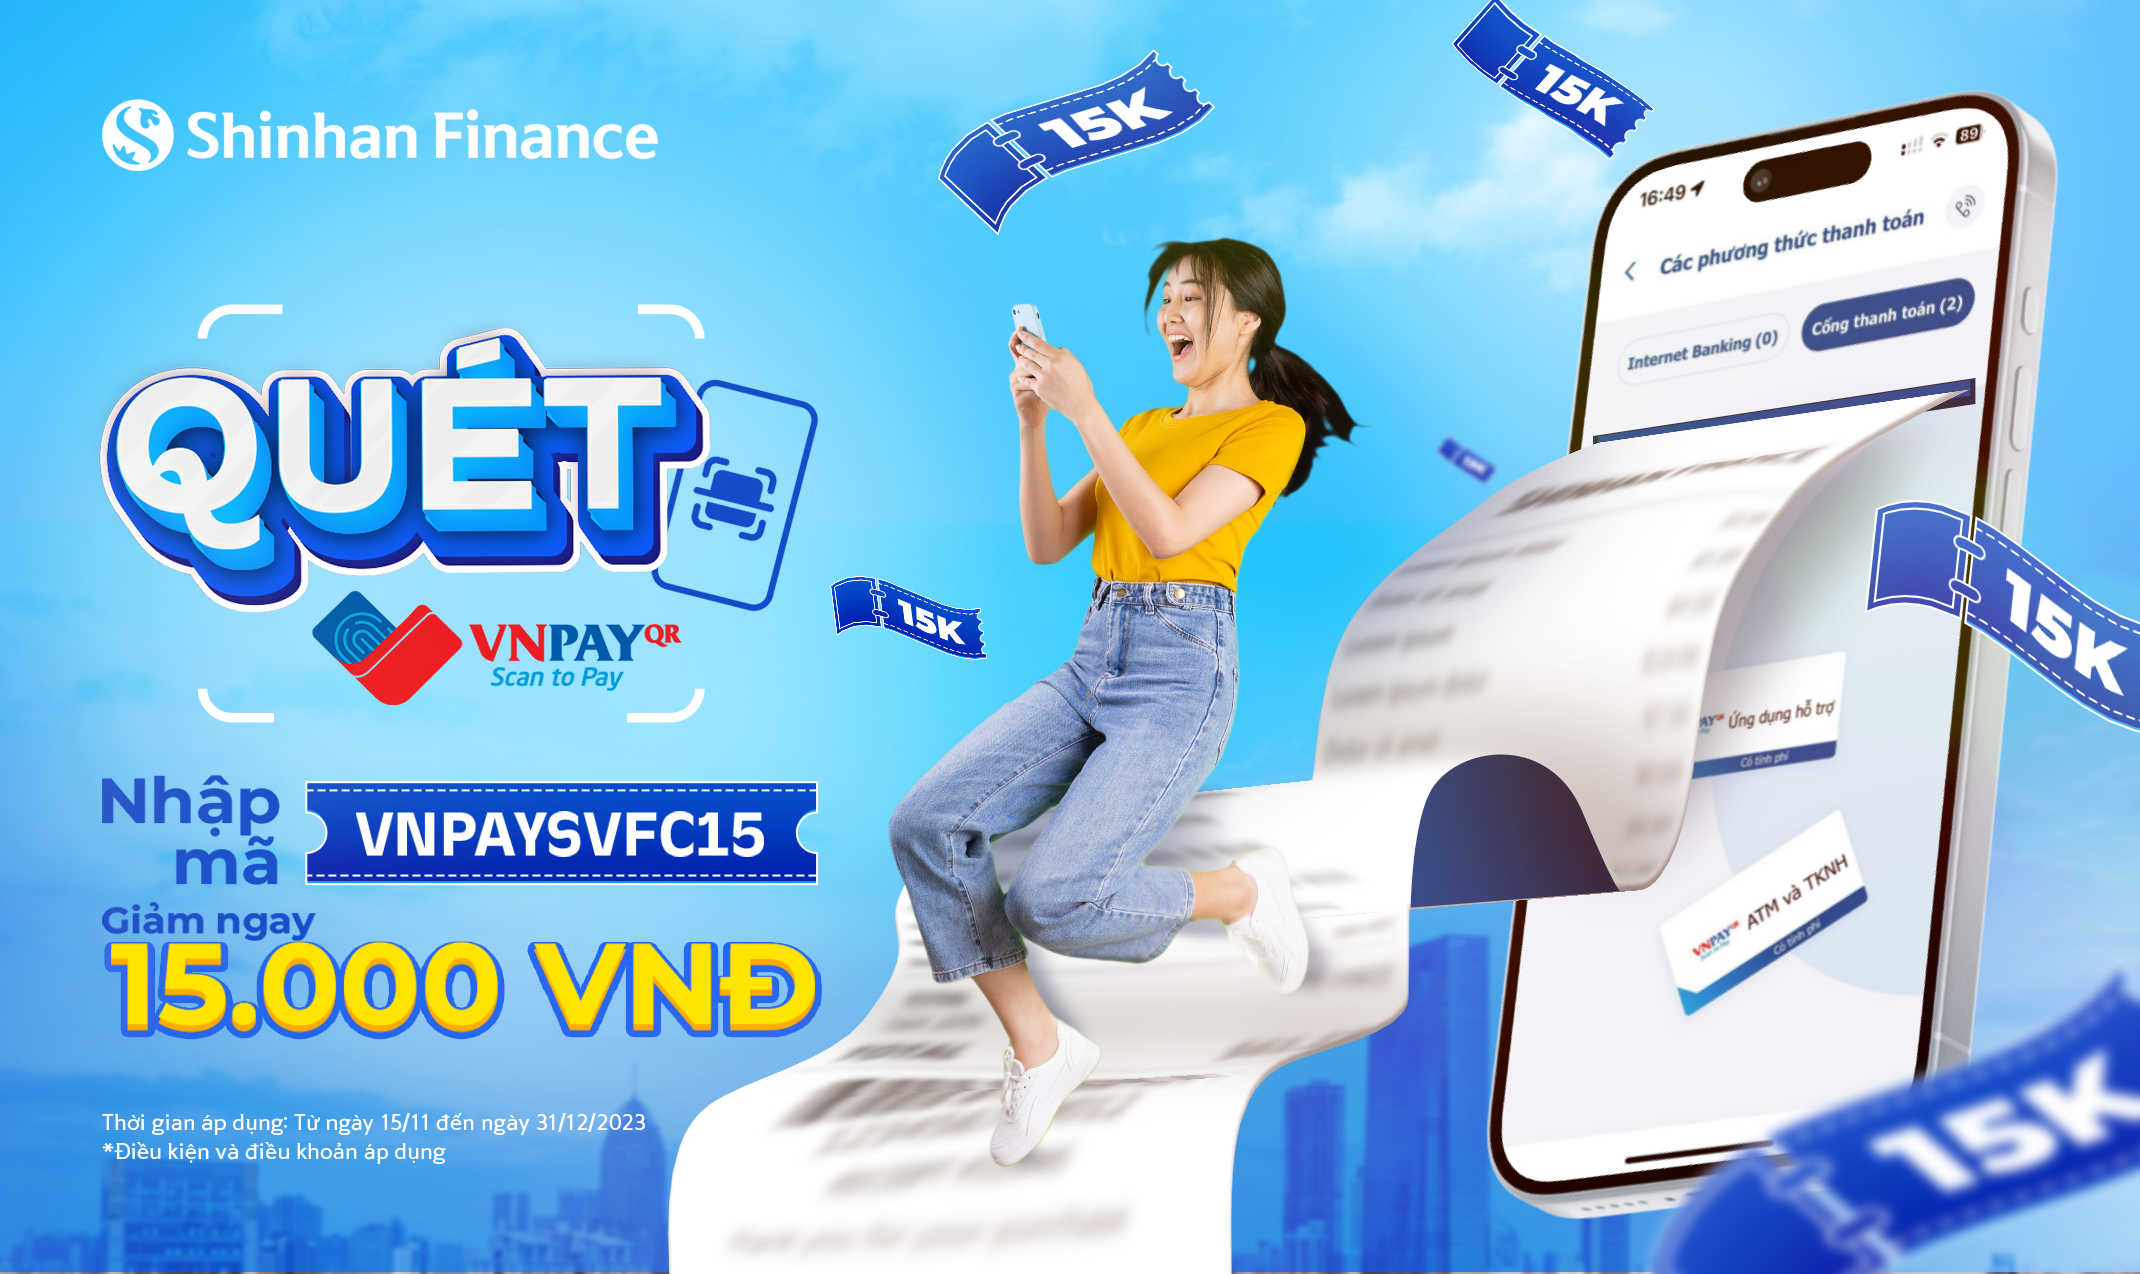 Thanh toán khoản vay tại Shinhan Finance bằng VNPAY-QR nhận ưu đãi 15.000 VNĐ